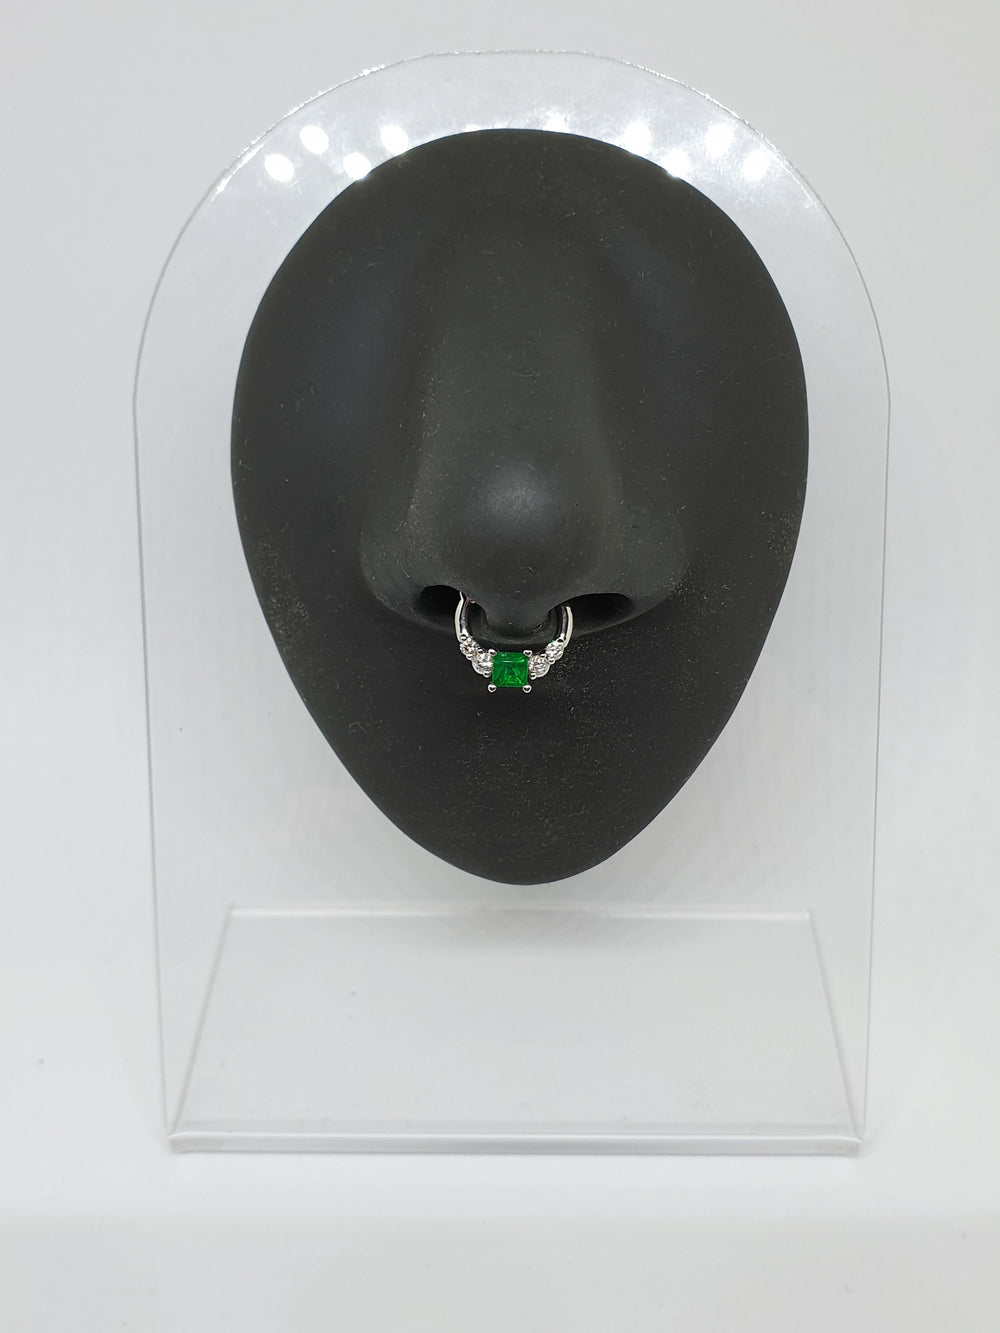 Emerald Septum Jewelry